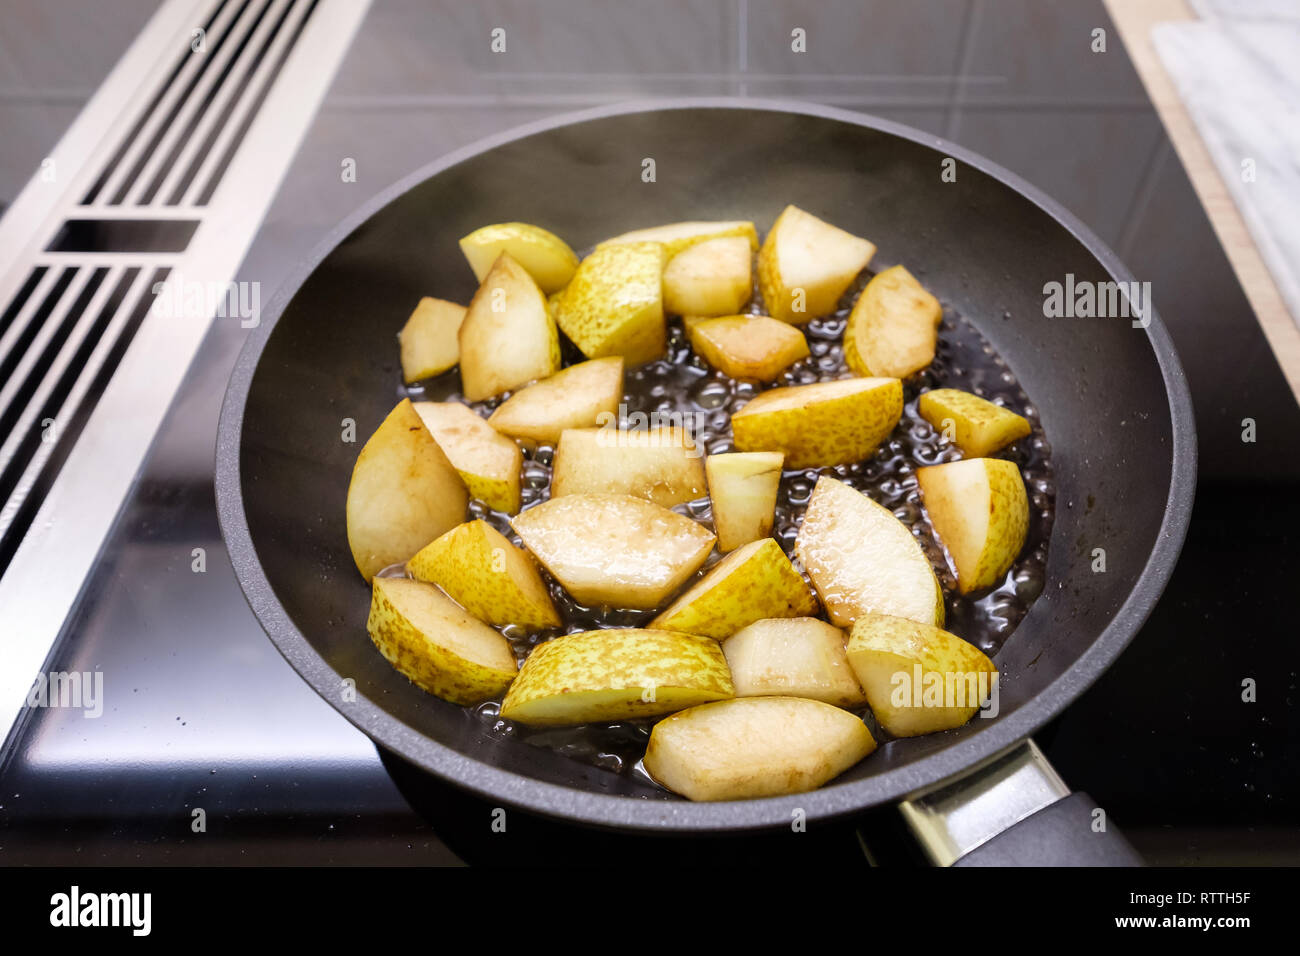 Frire les pois et le vinaigre balsamique dans une casserole sur une cuisinière. Banque D'Images